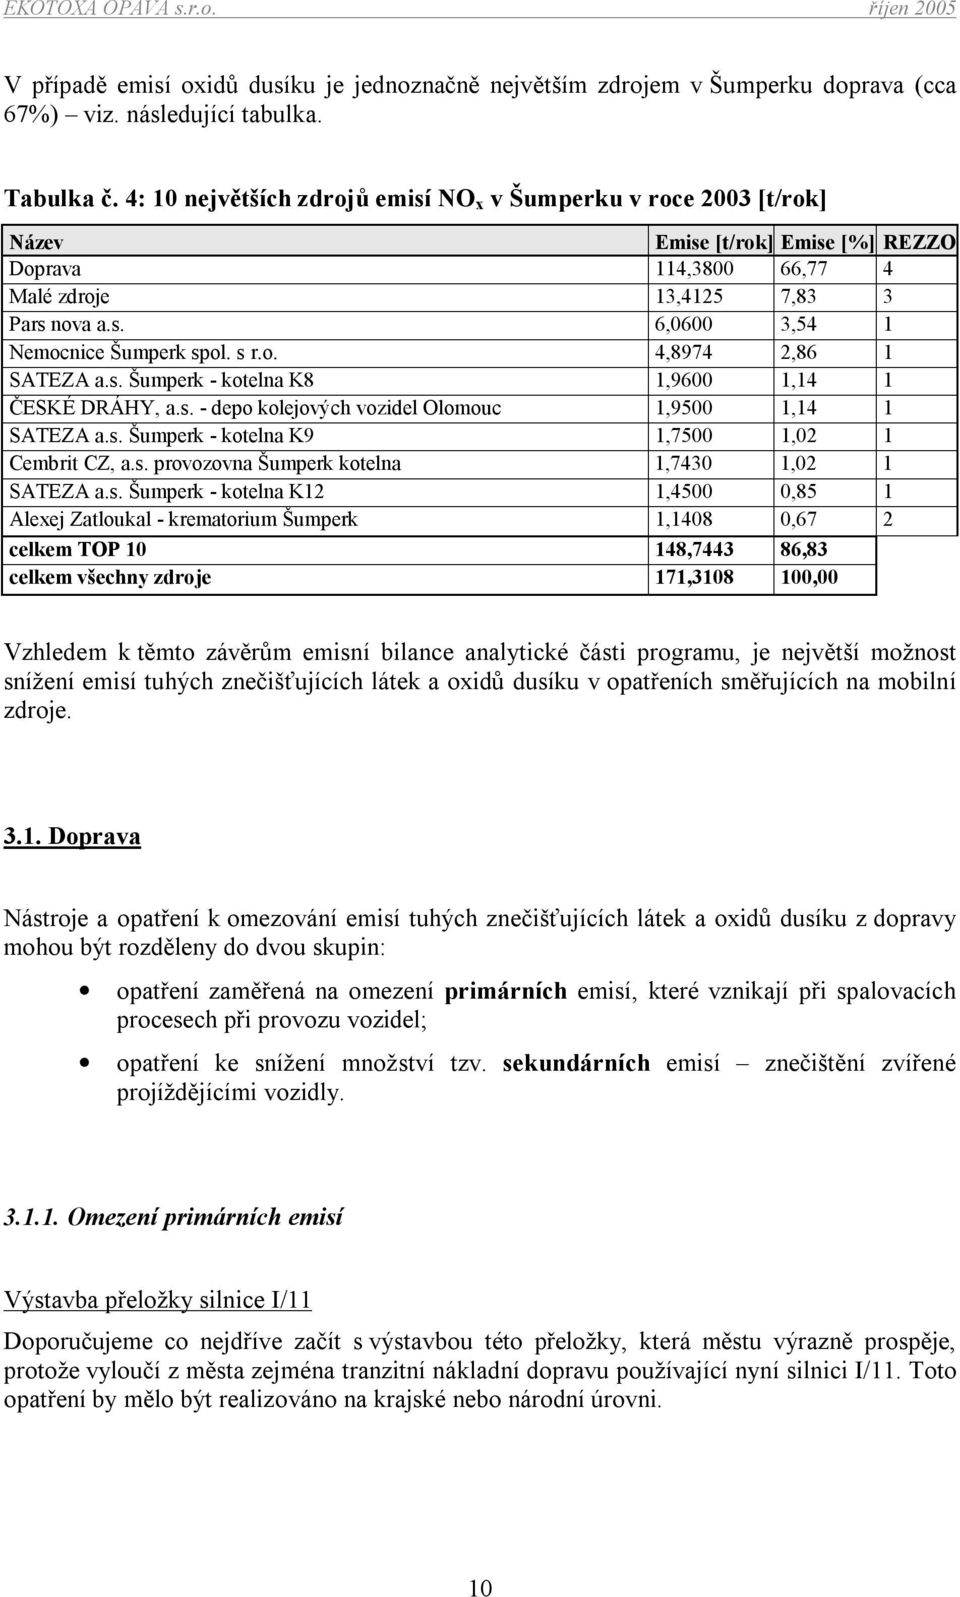 s r.o. 4,8974 2,86 1 SATEZA a.s. Šumperk - kotelna K8 1,9600 1,14 1 ČESKÉ DRÁHY, a.s. - depo kolejových vozidel Olomouc 1,9500 1,14 1 SATEZA a.s. Šumperk - kotelna K9 1,7500 1,02 1 Cembrit CZ, a.s. provozovna Šumperk kotelna 1,7430 1,02 1 SATEZA a.